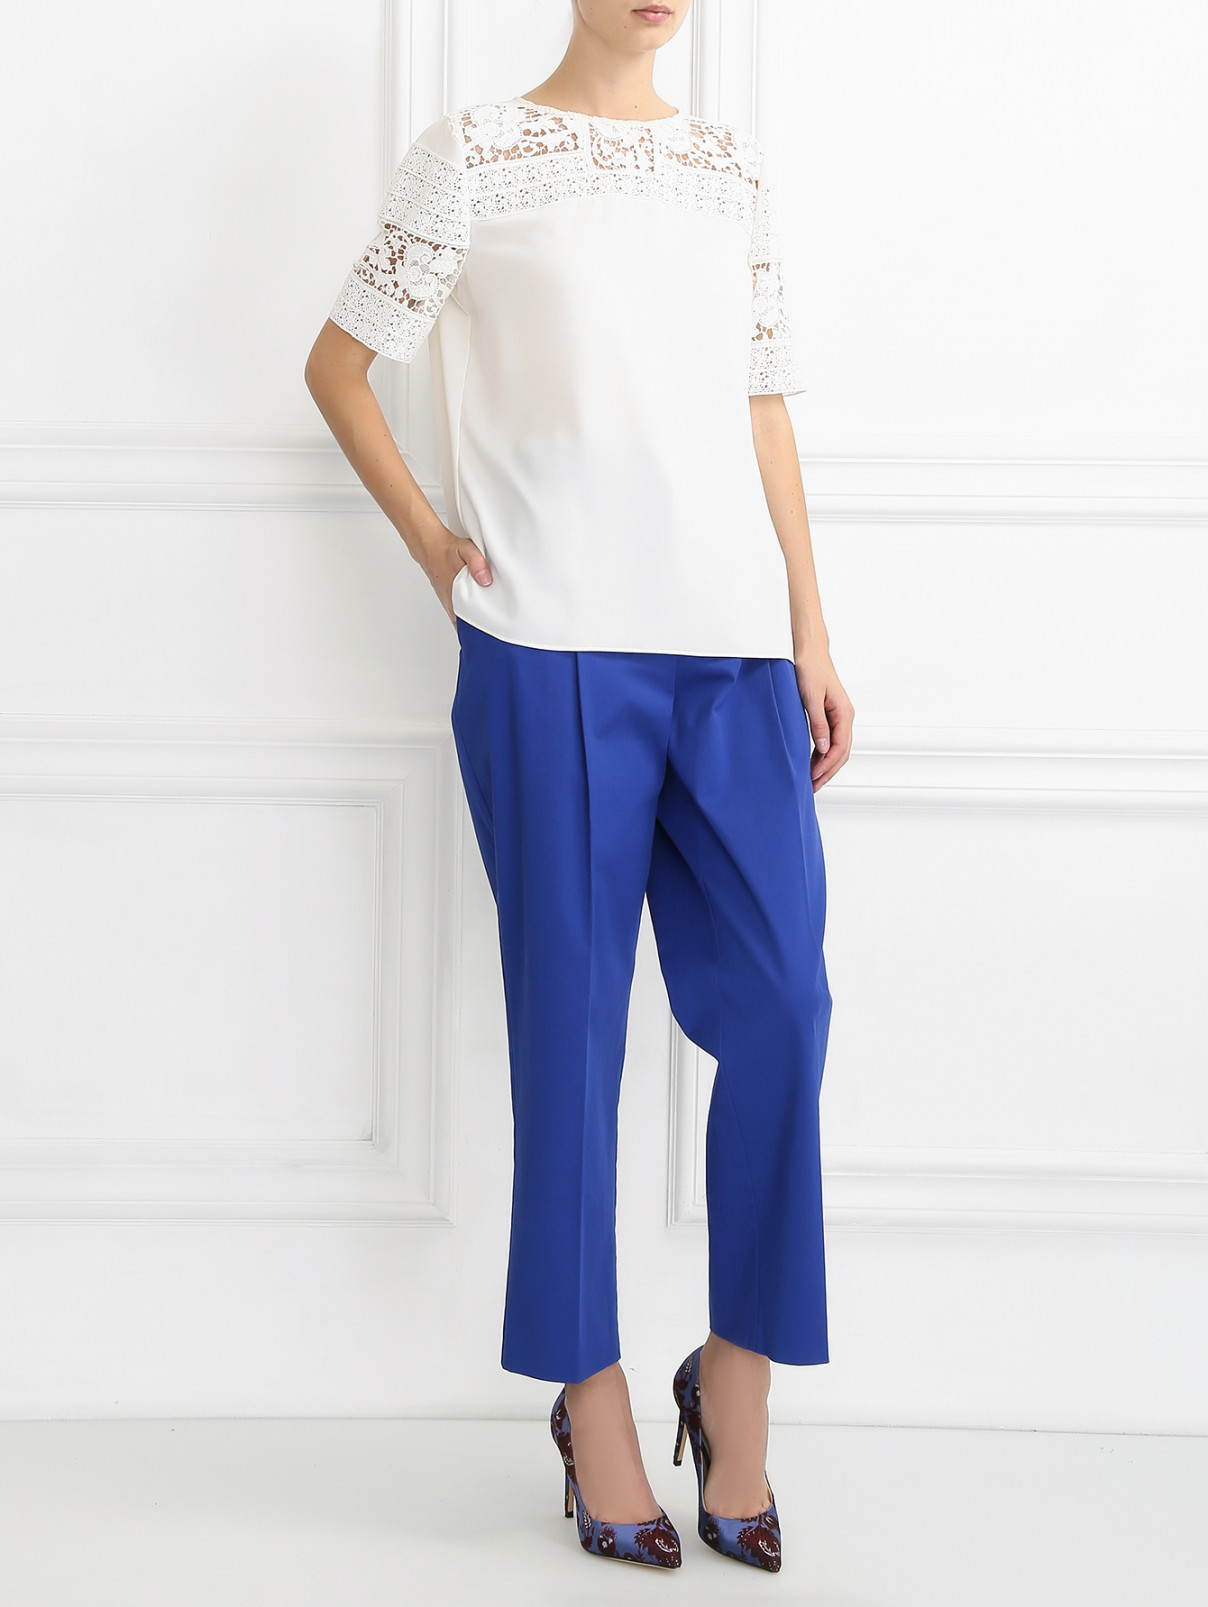 Узкие укороченные брюки со стрелками Alberta Ferretti  –  Модель Общий вид  – Цвет:  Синий